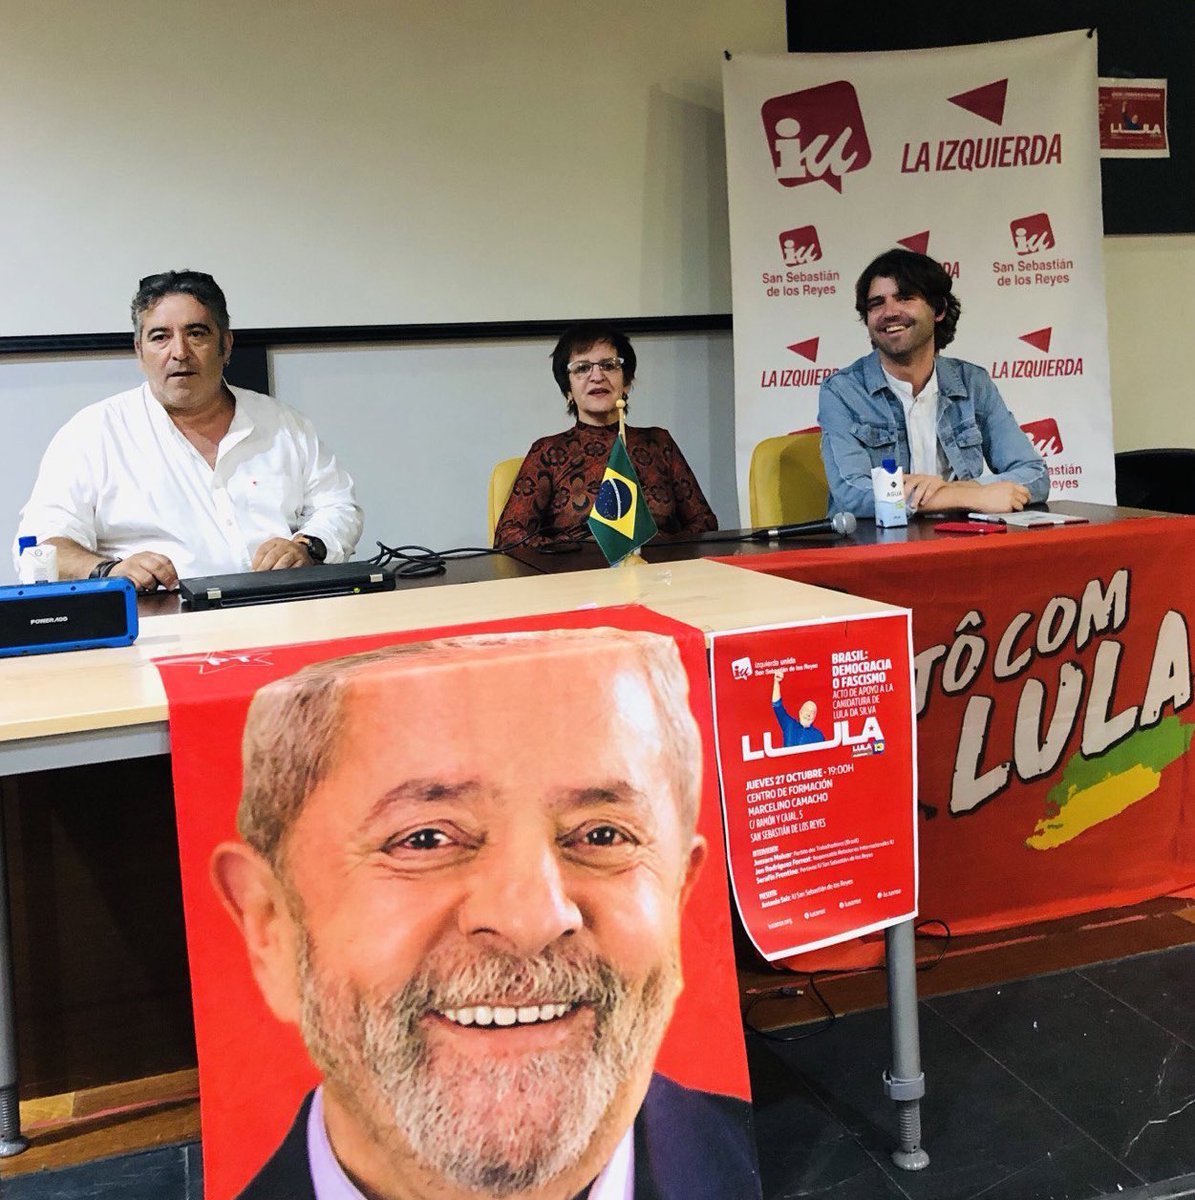 Las elecciones del domingo en Brasil son determinantes para todas y todos. Sólo Lula es garantía de avance en derechos y de lucha por un planeta habitable. Gracias a las compañeras de @iusanse por organizar este acto. #LulaPresidente #BrasilDaEsperança